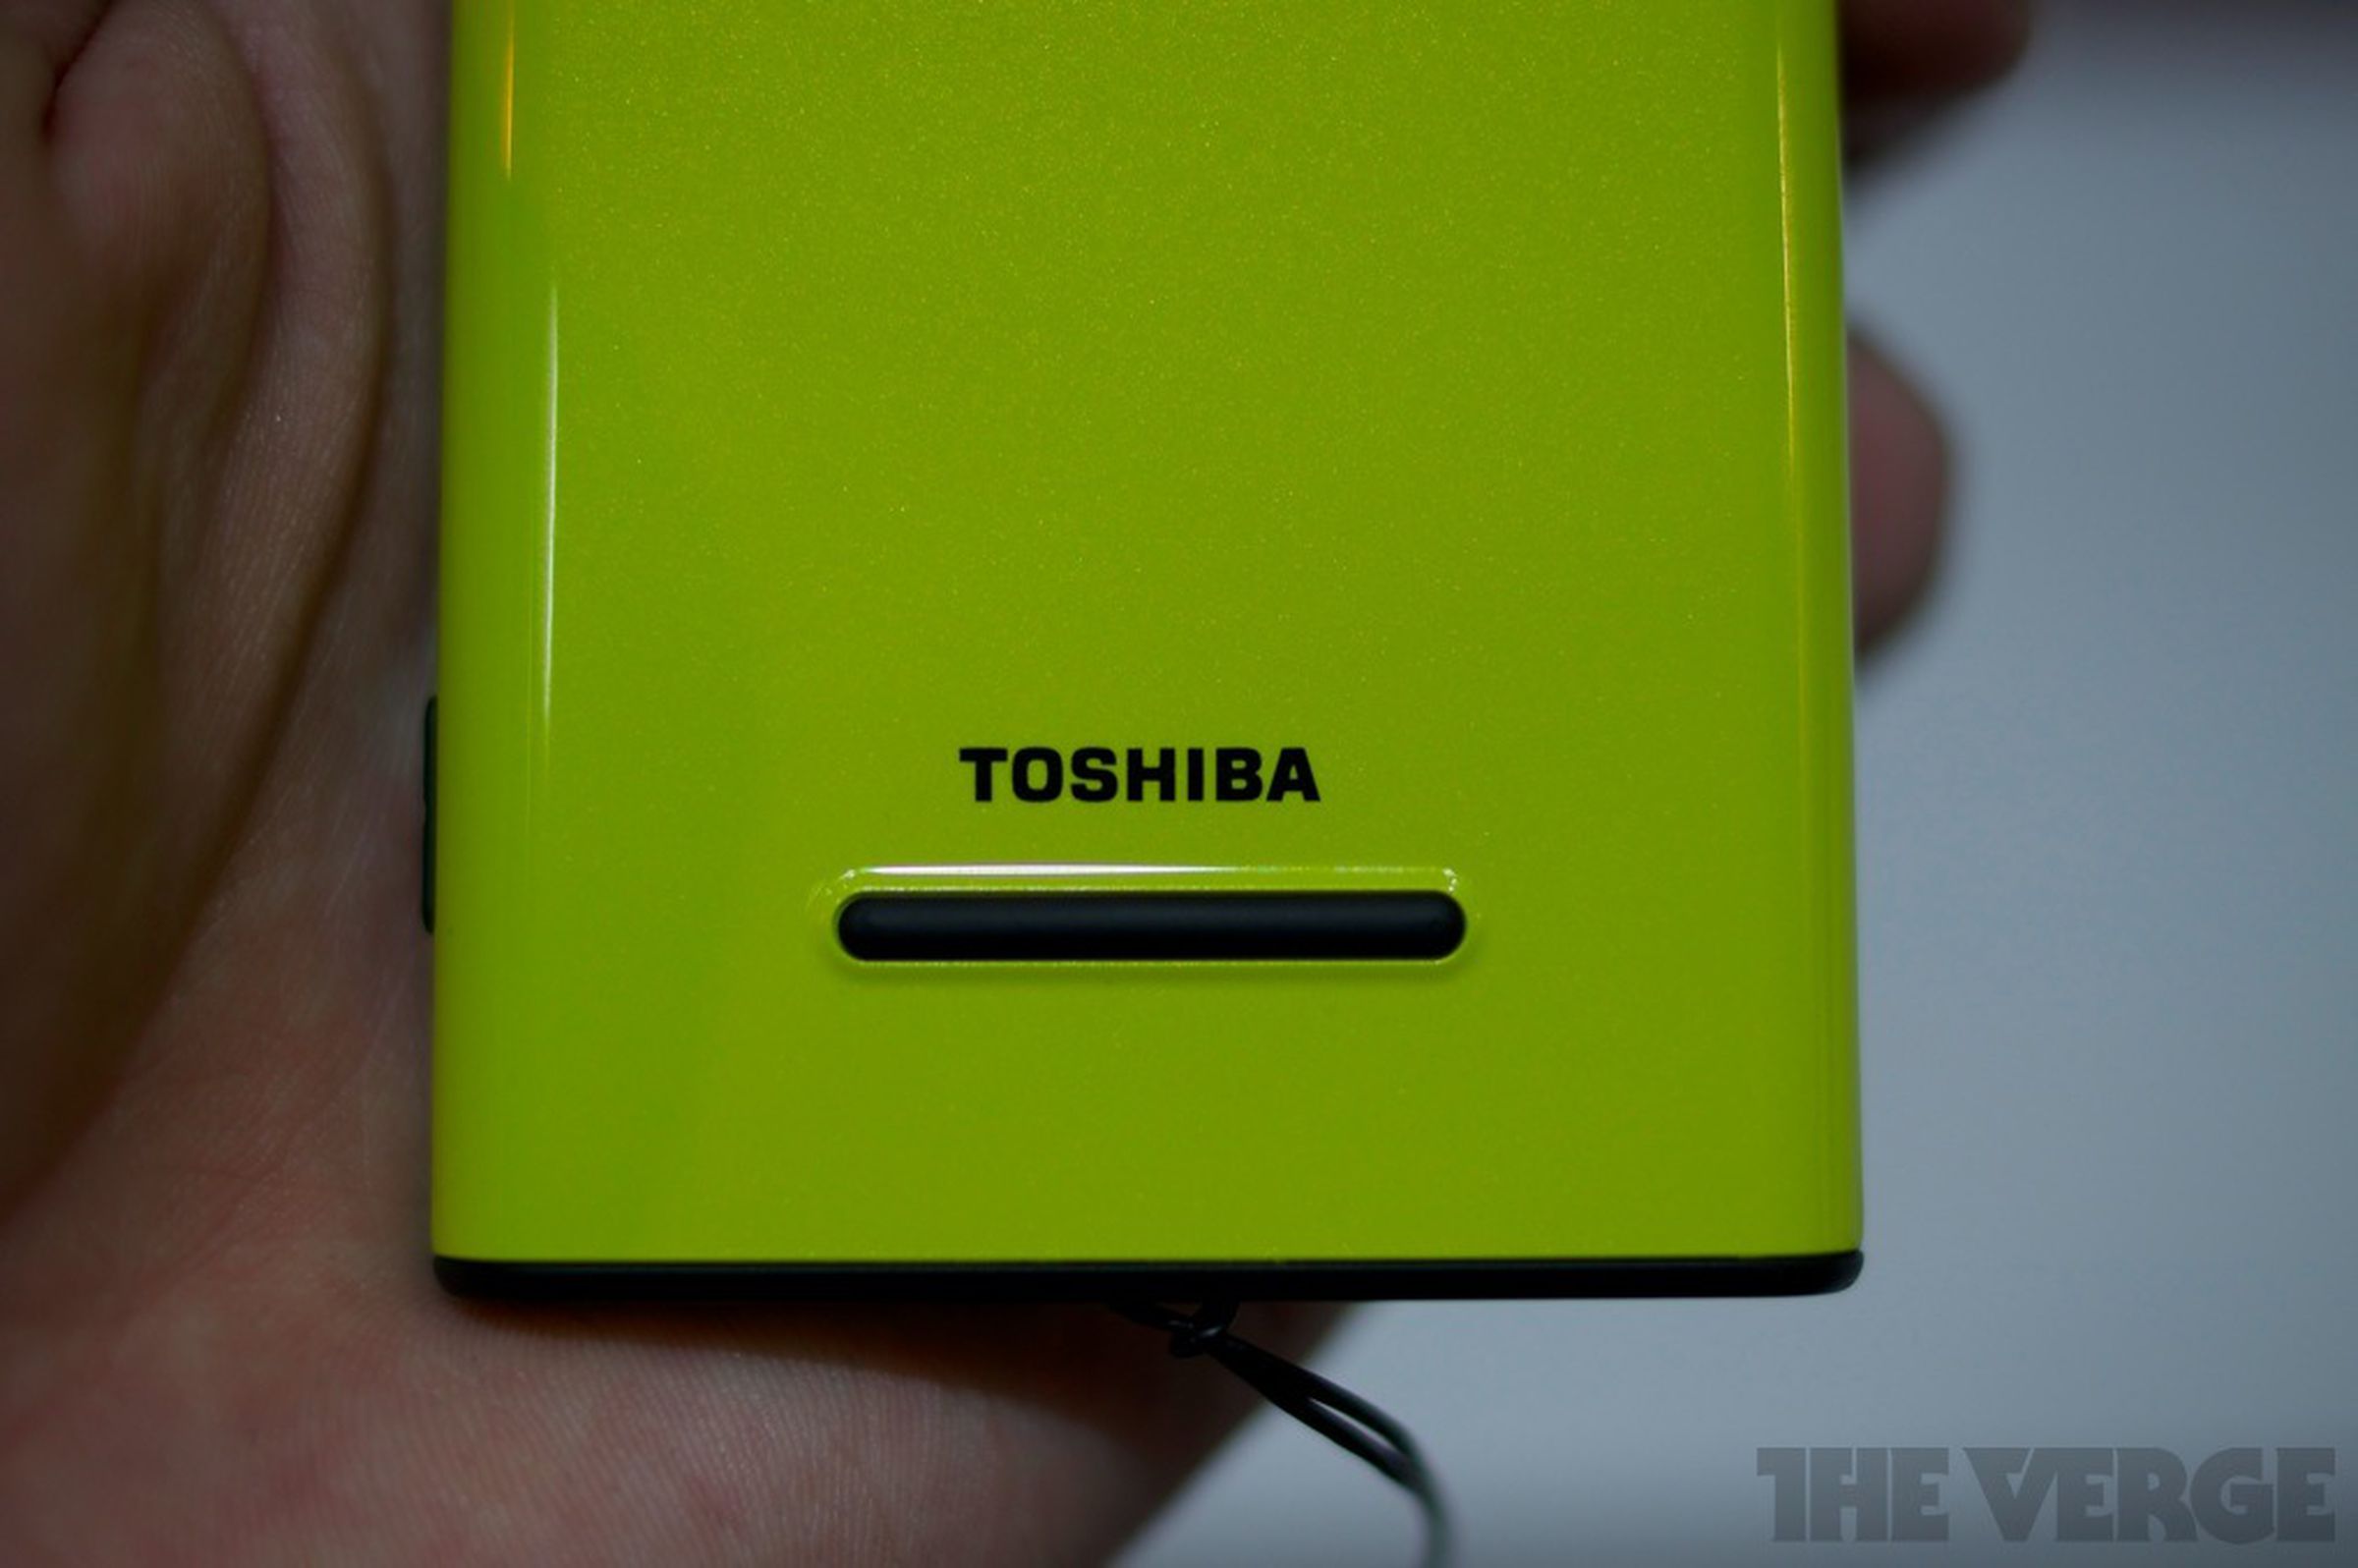 Fujitsu Toshiba IS12t Windows Phone